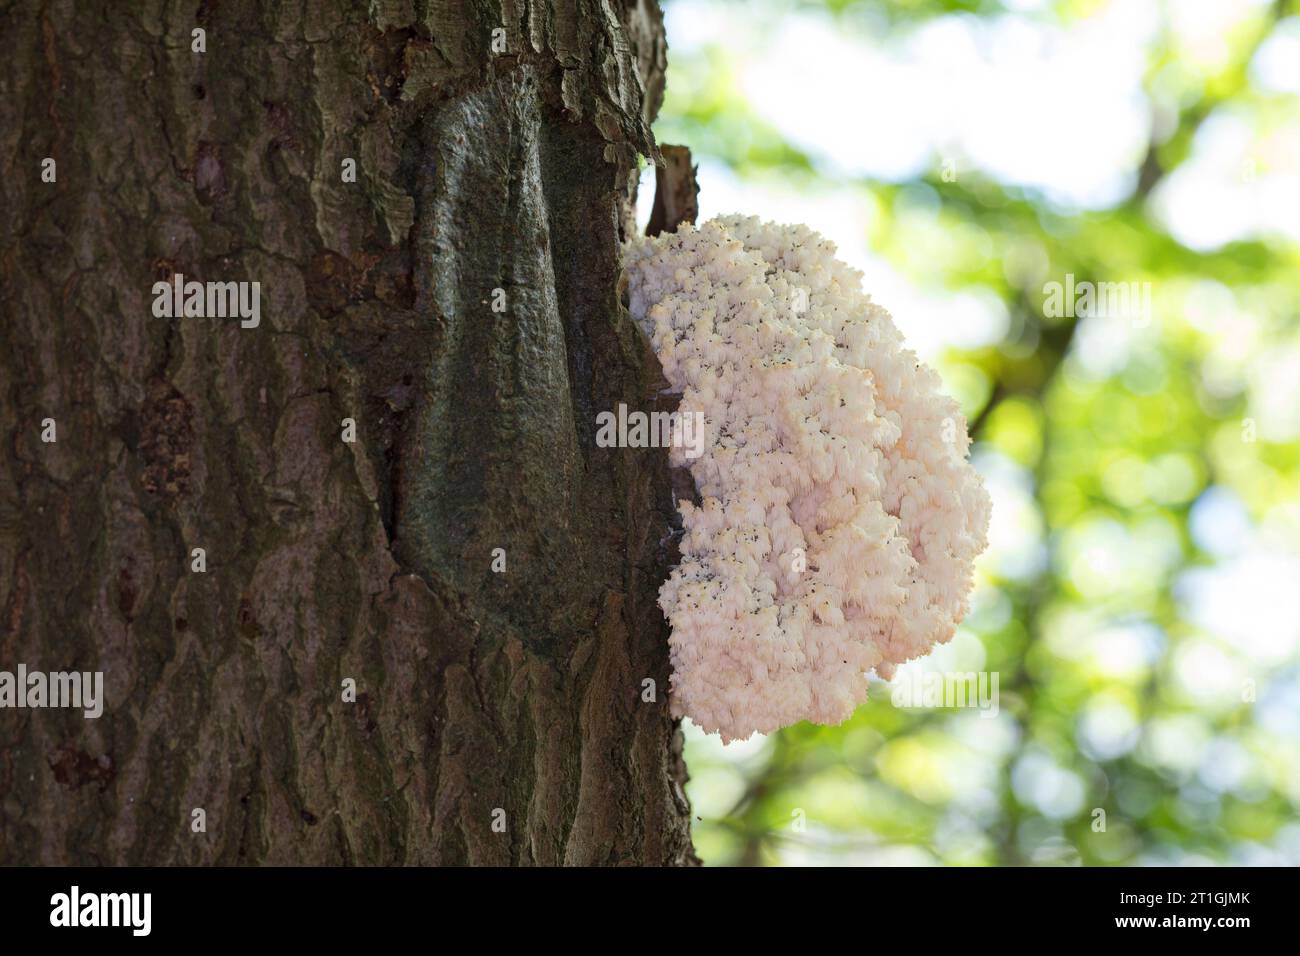 Fungo a pettine, dente di corallo (Hericium coralloides, Hericium clathroides), su legno morto, Germania Foto Stock